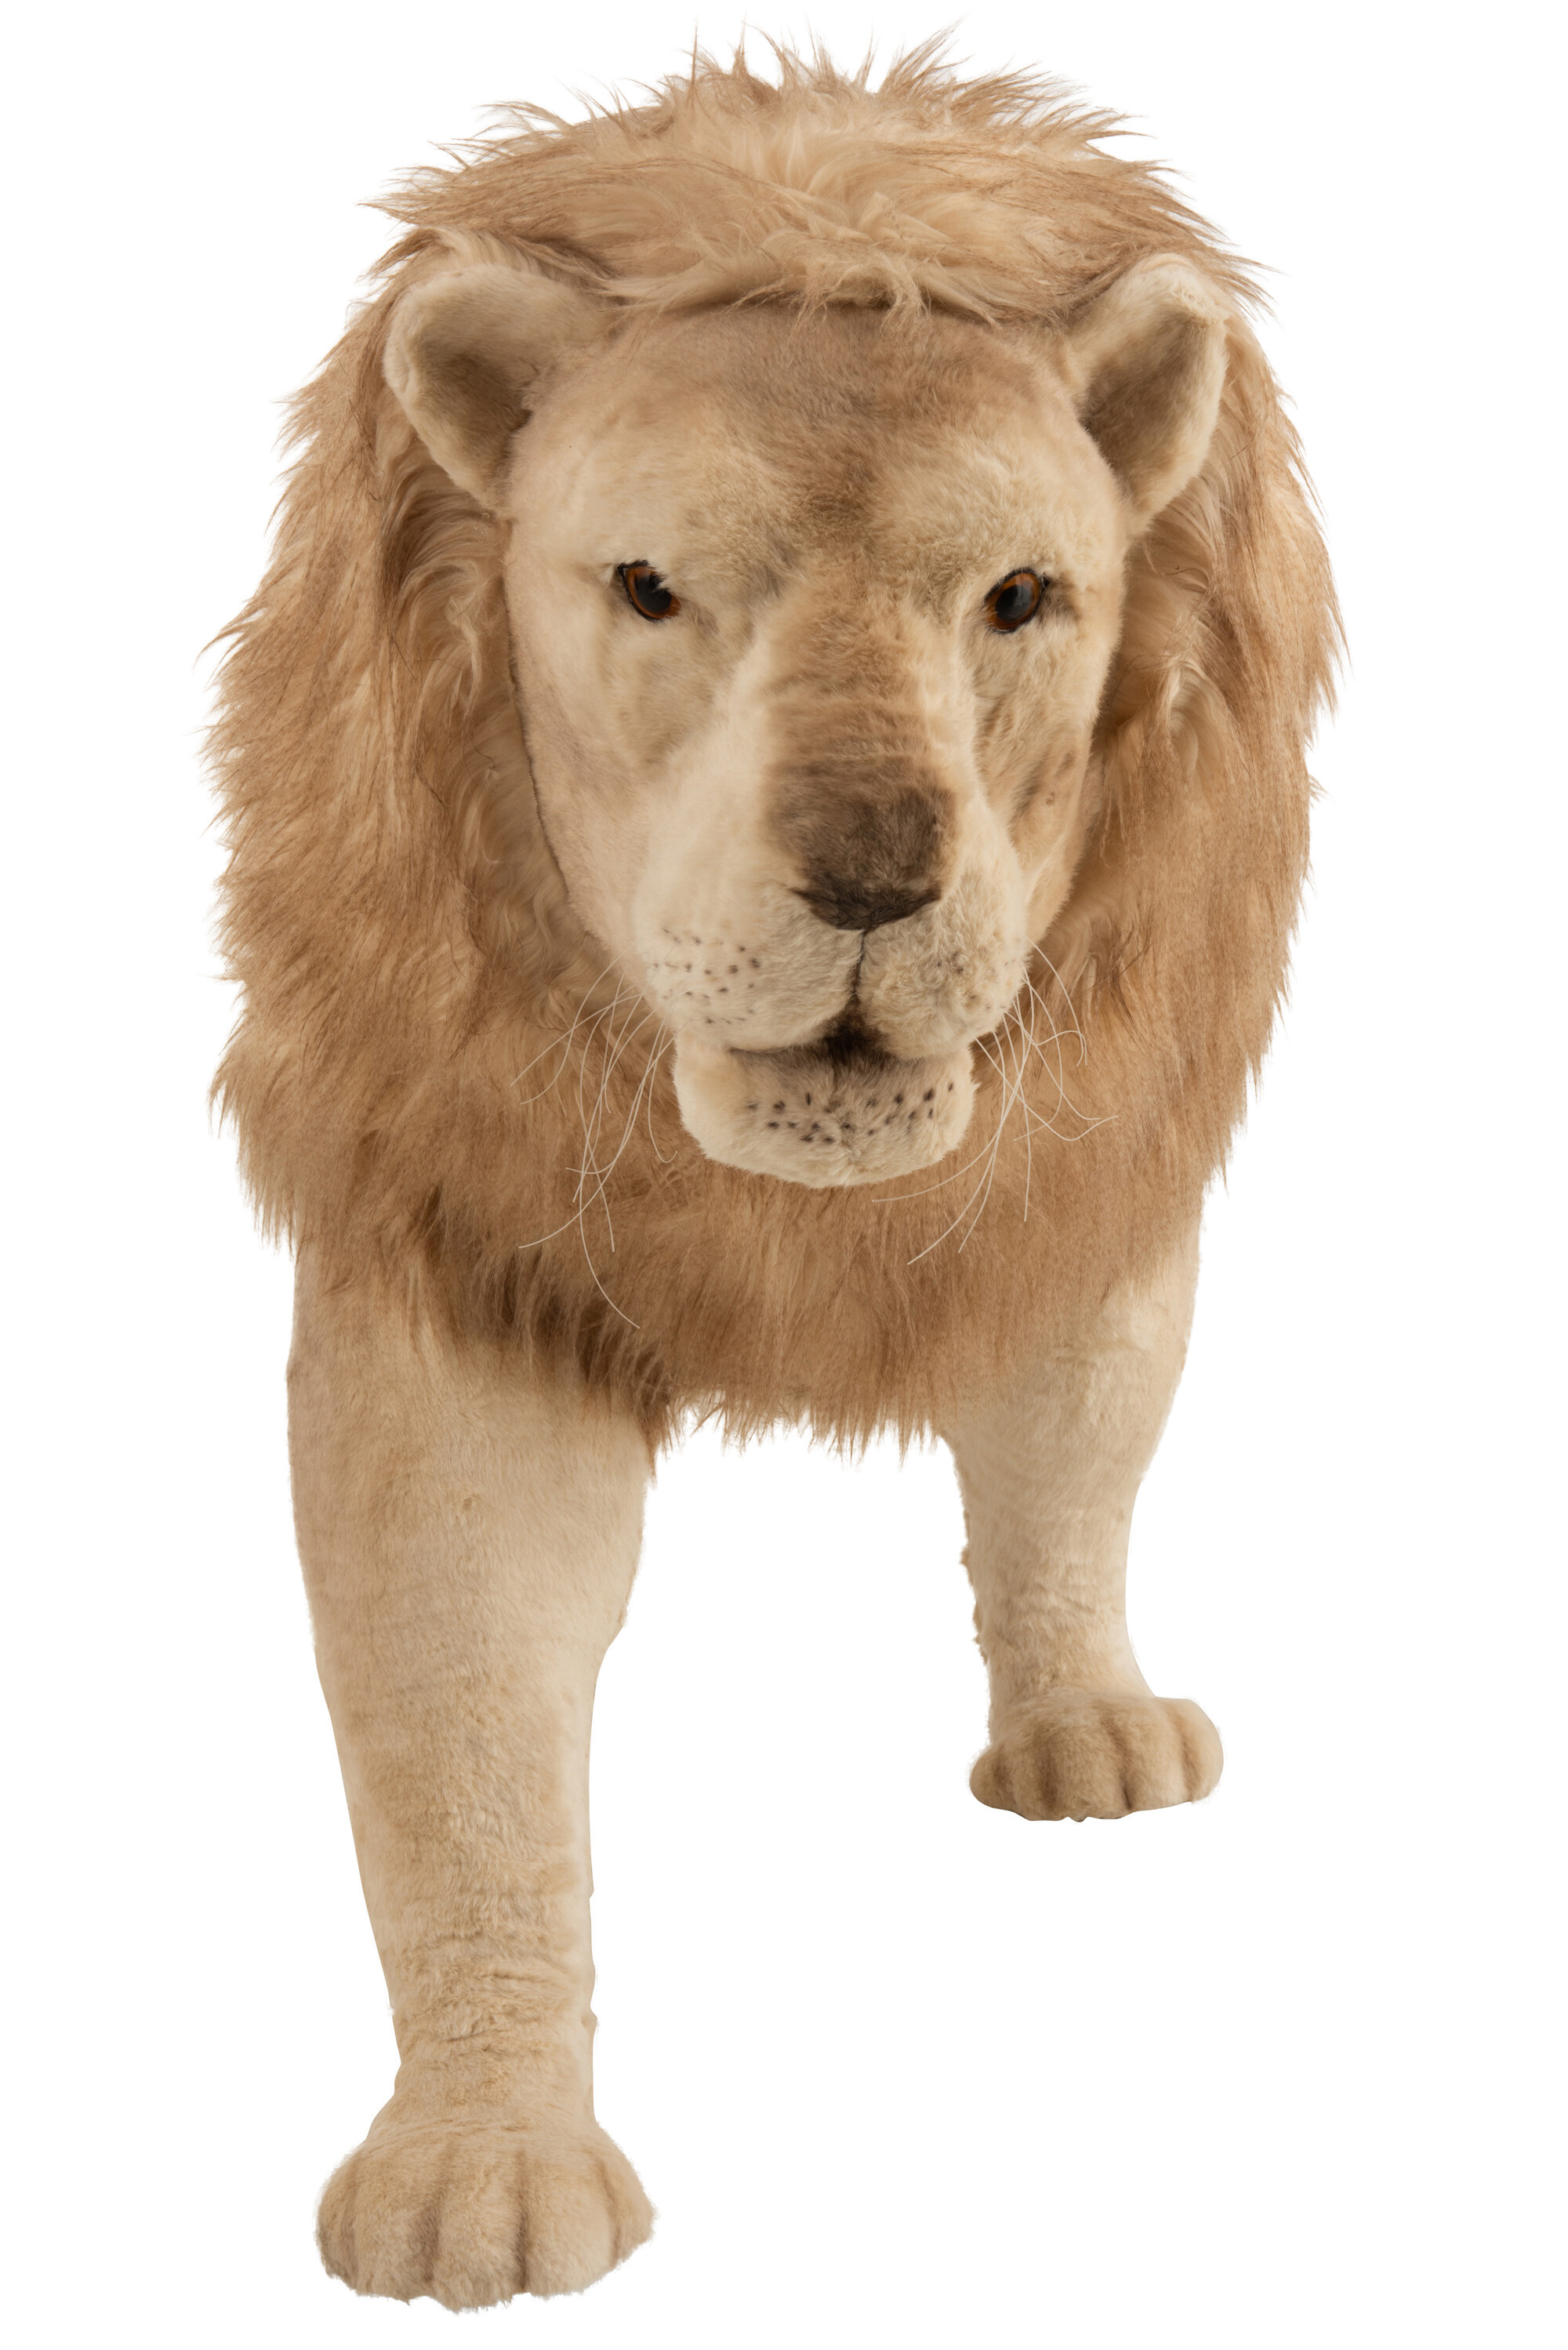 Peluche Lion Nature Planet 23 cm marron beige Gros yeux Zooper S lion